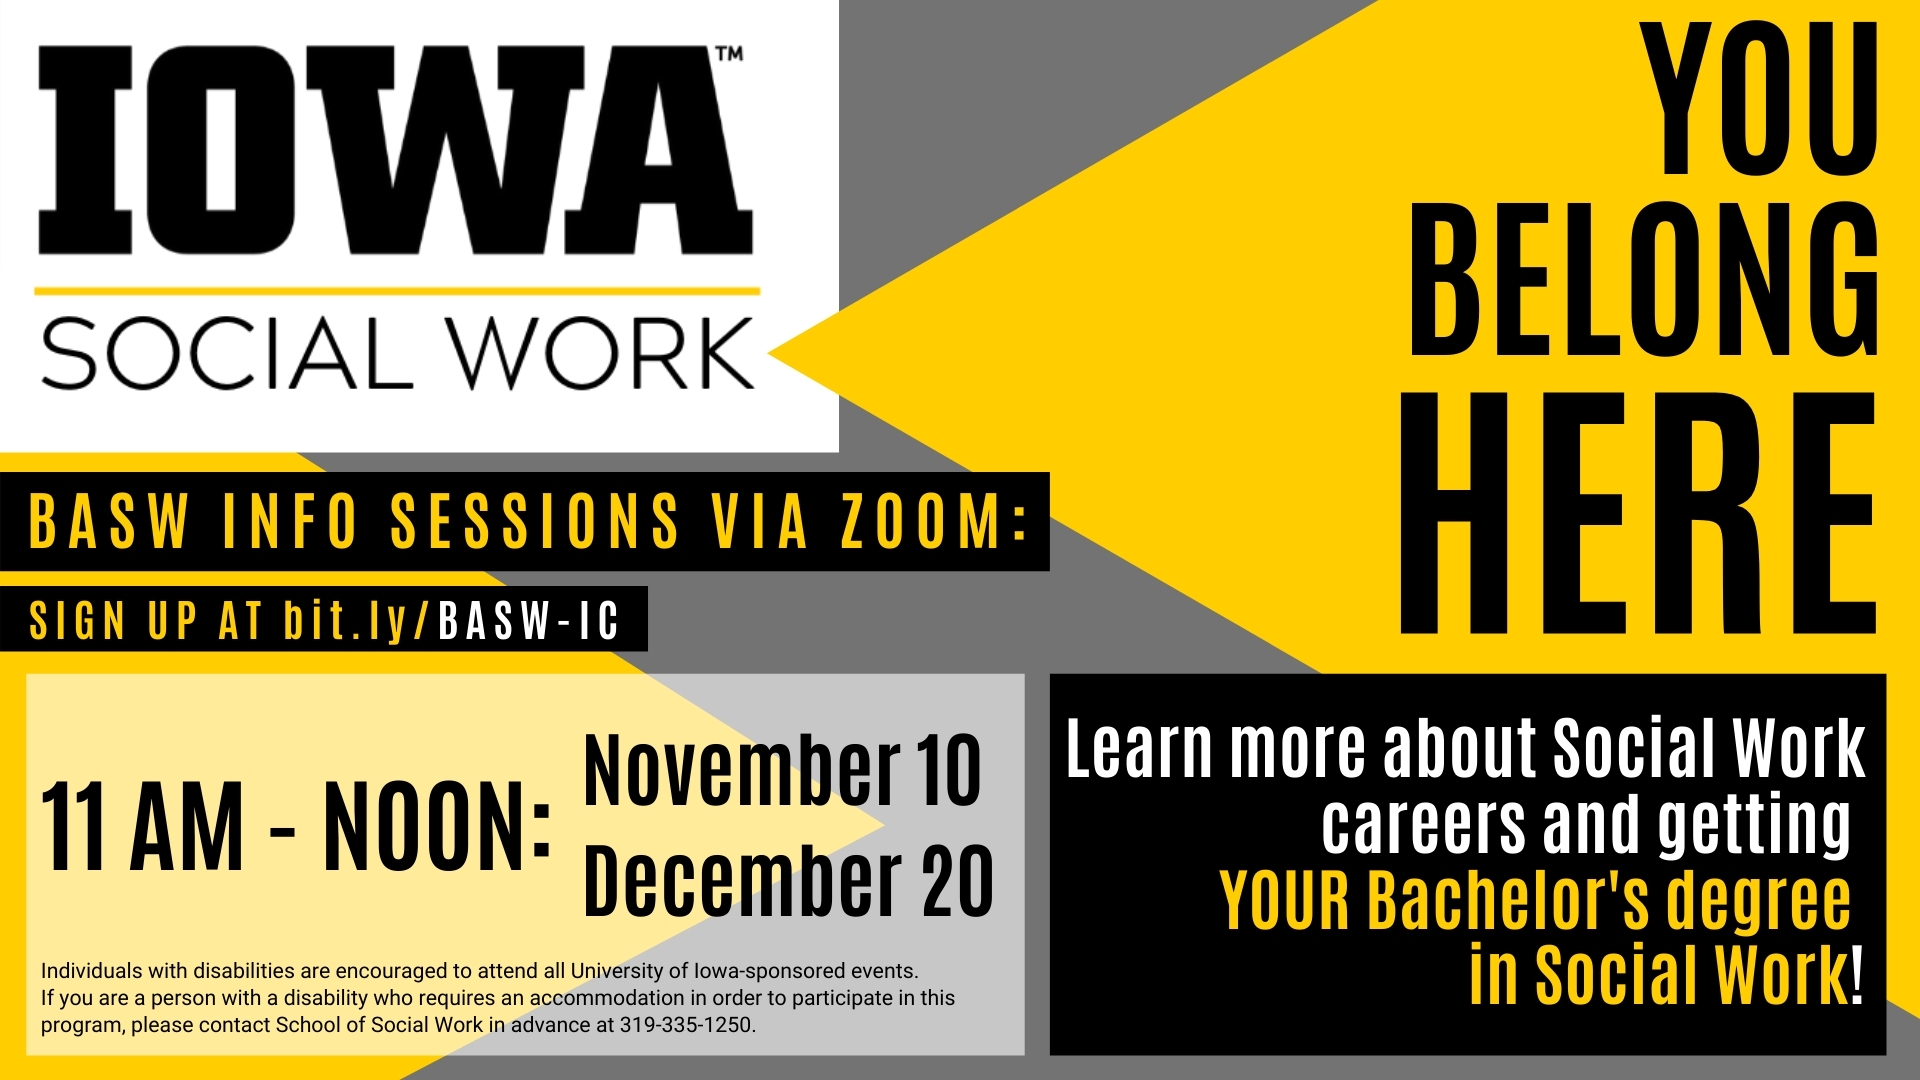 Iowa Social Work BASW info sessions bitly/BASW-IC